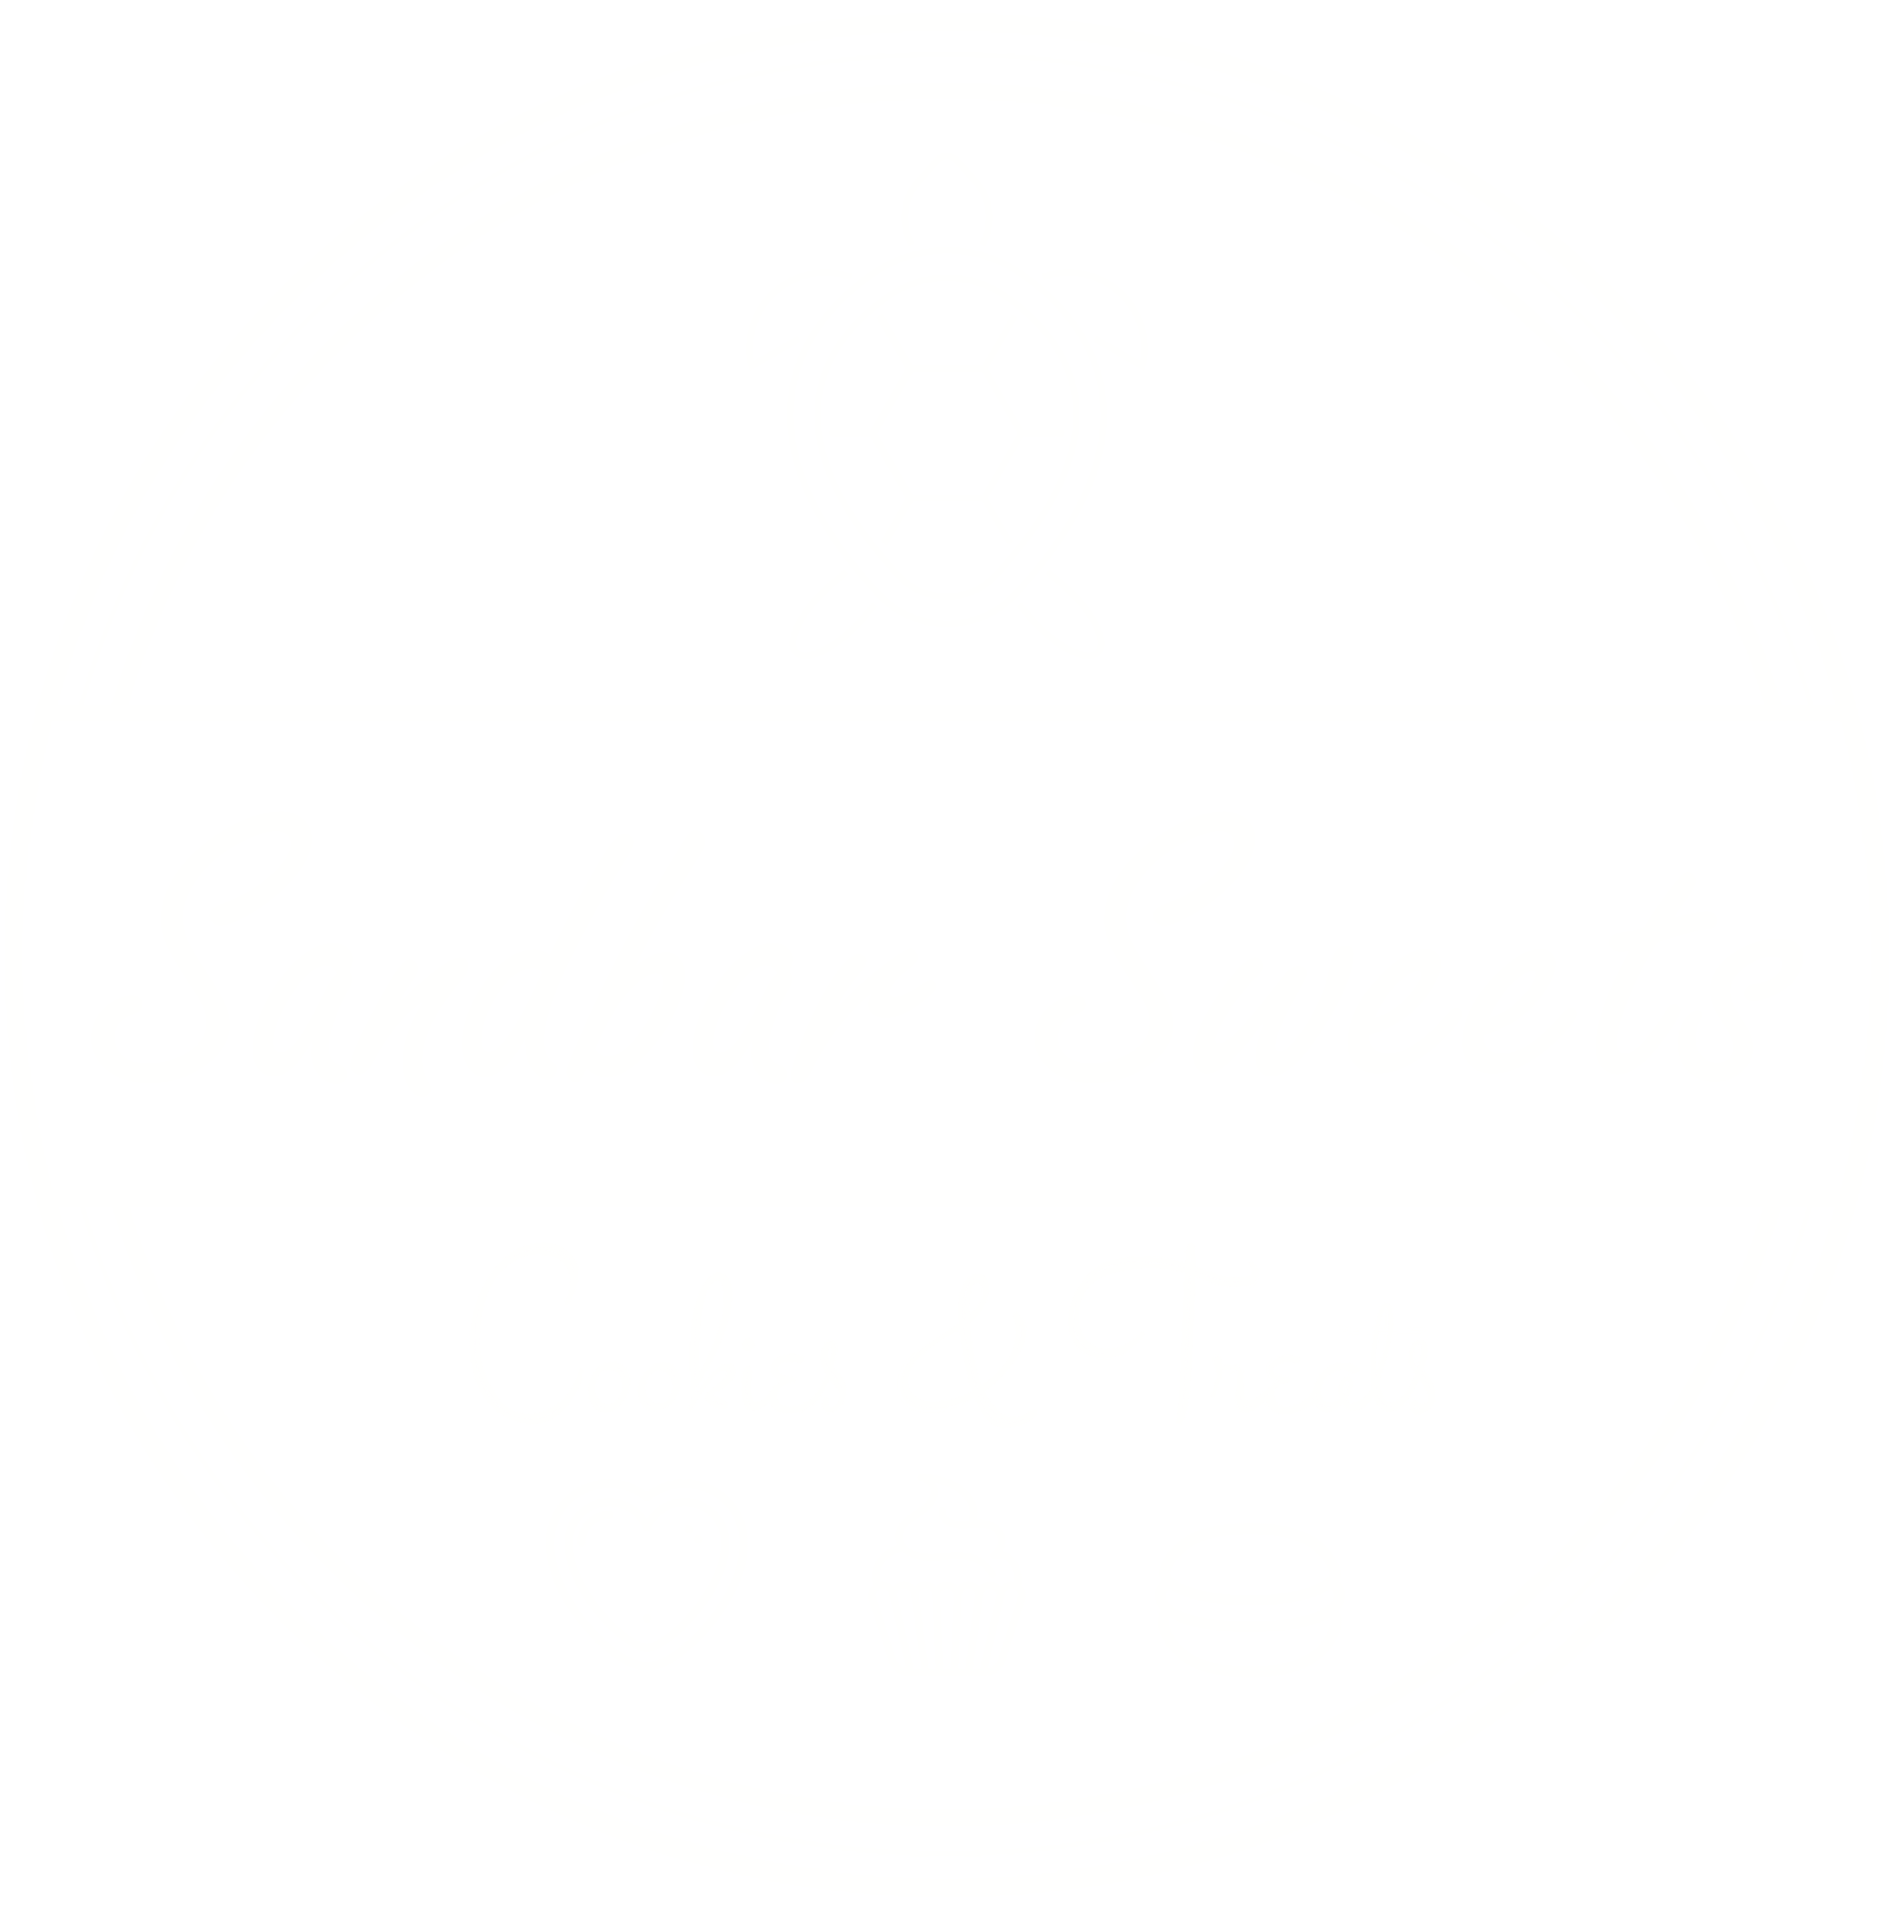 Sandbar Sweets